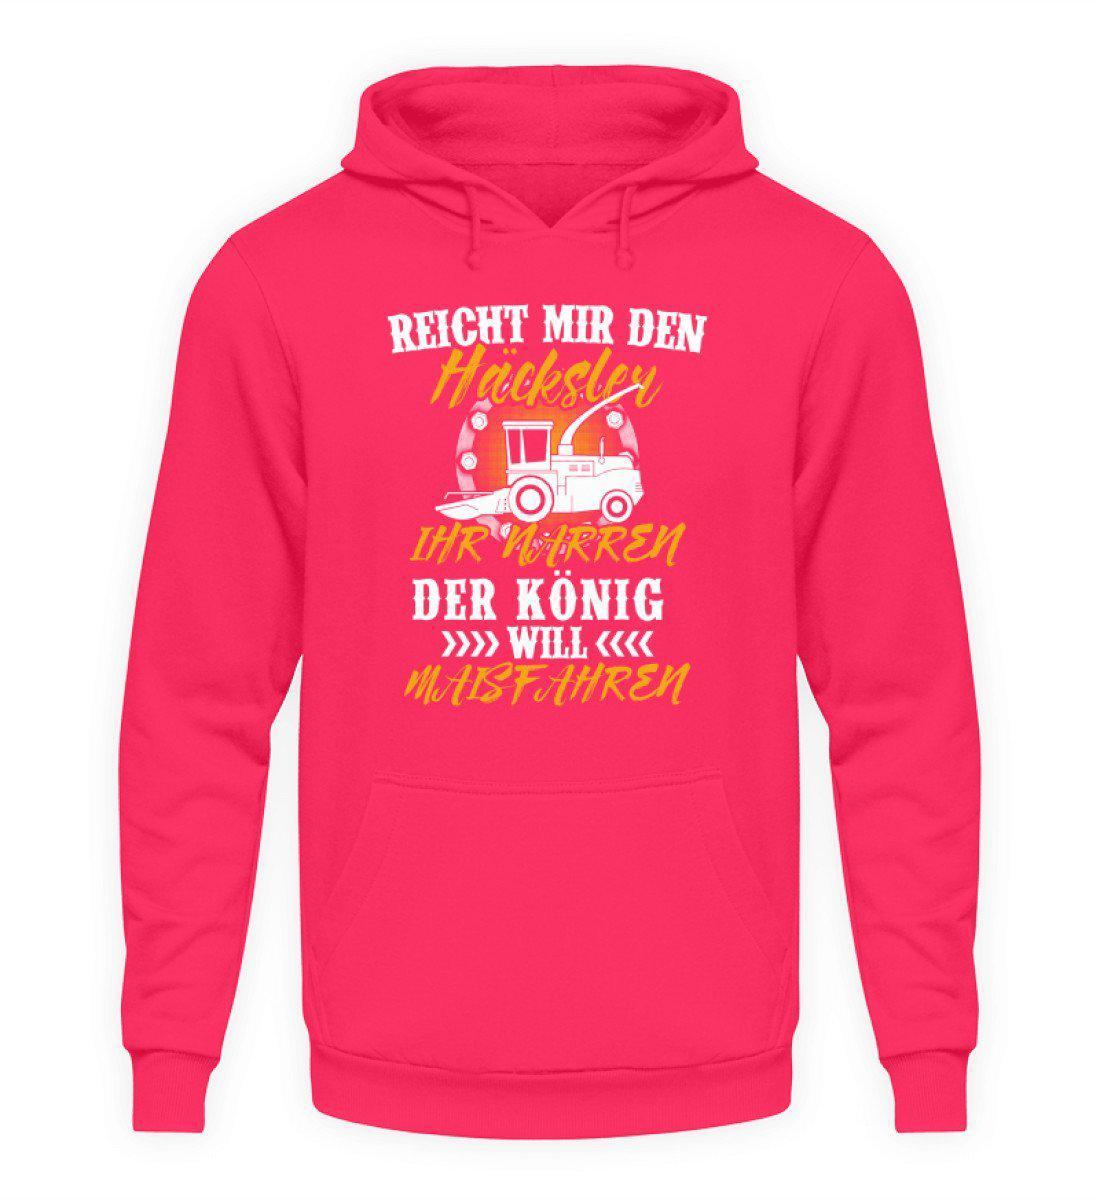 Häcksler König Maisfahren · Unisex Kapuzenpullover Hoodie-Unisex Hoodie-Hot Pink-L-Agrarstarz